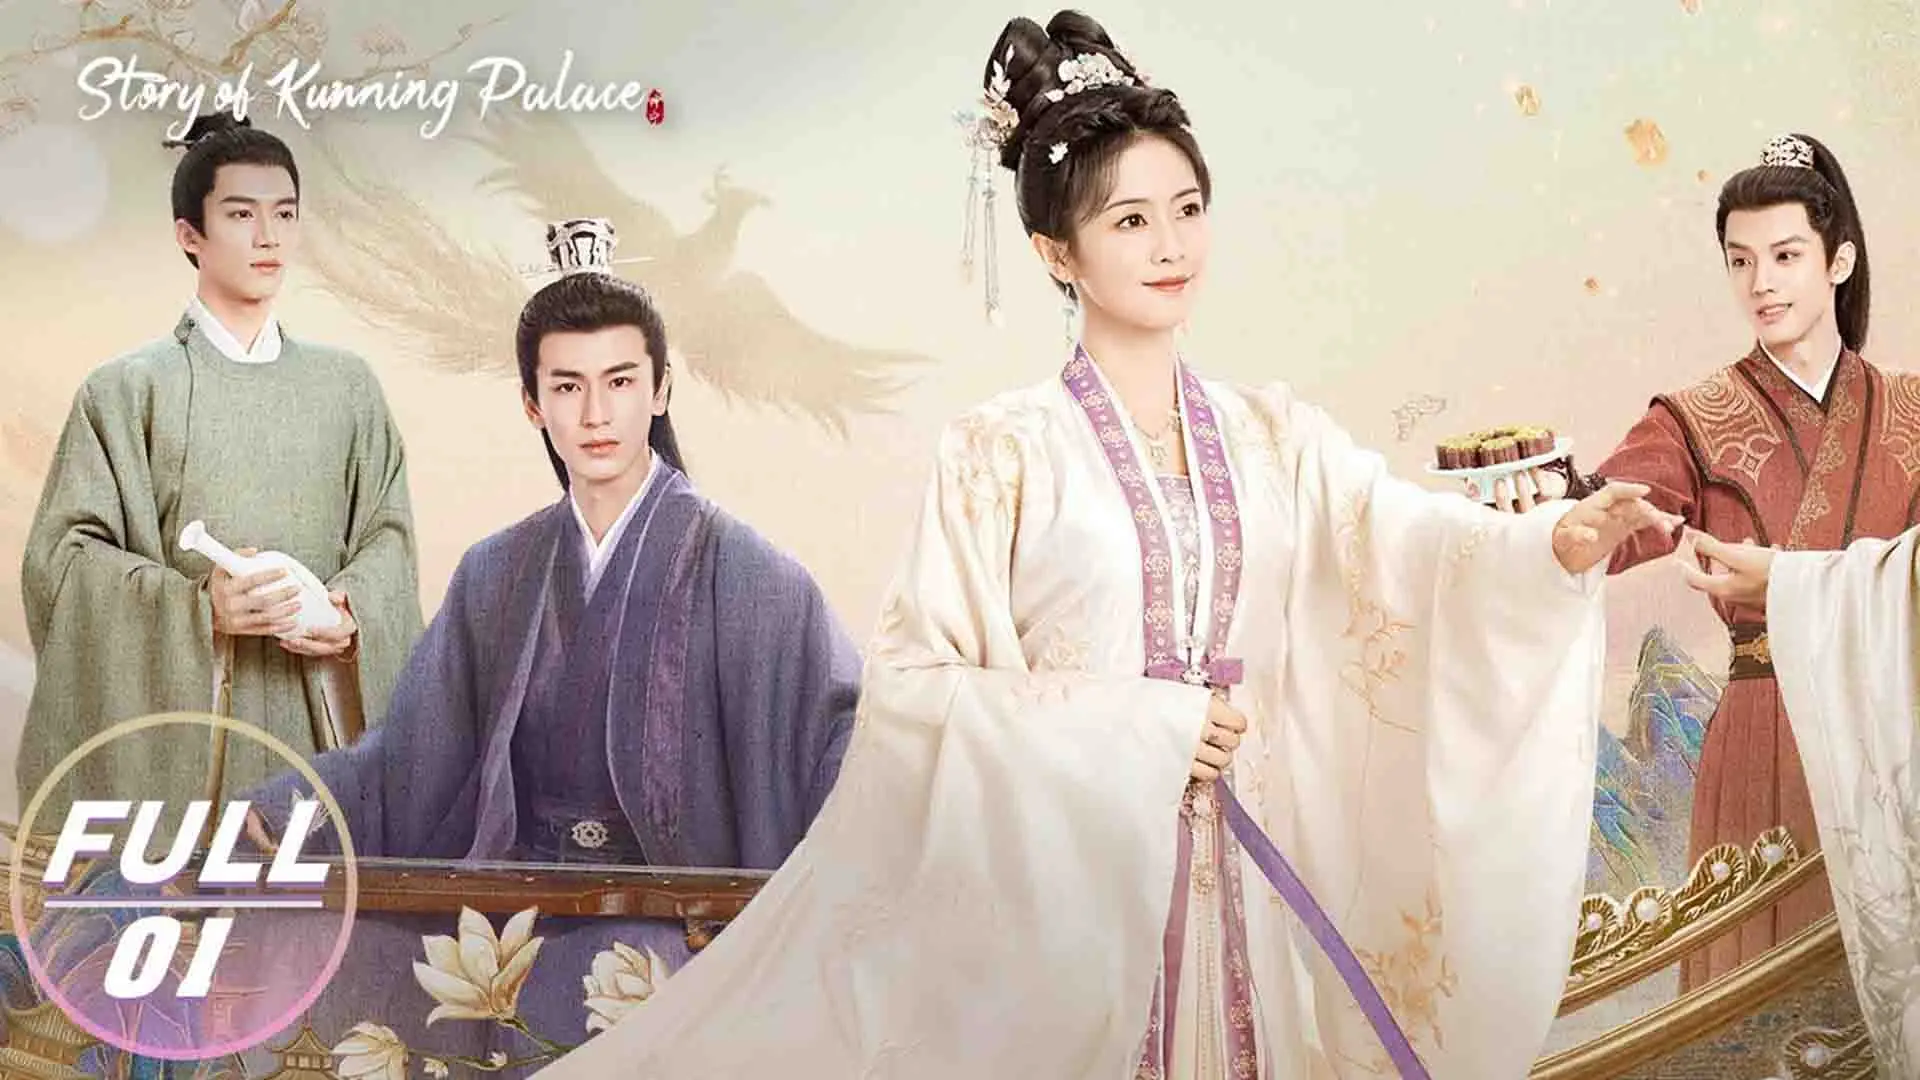 بازیگران اصلی سریال Story of Kunning Palace ۳۰ تا از بهترین سریال های چینی بهمراه امتیاز IMDB ایتی مایتی